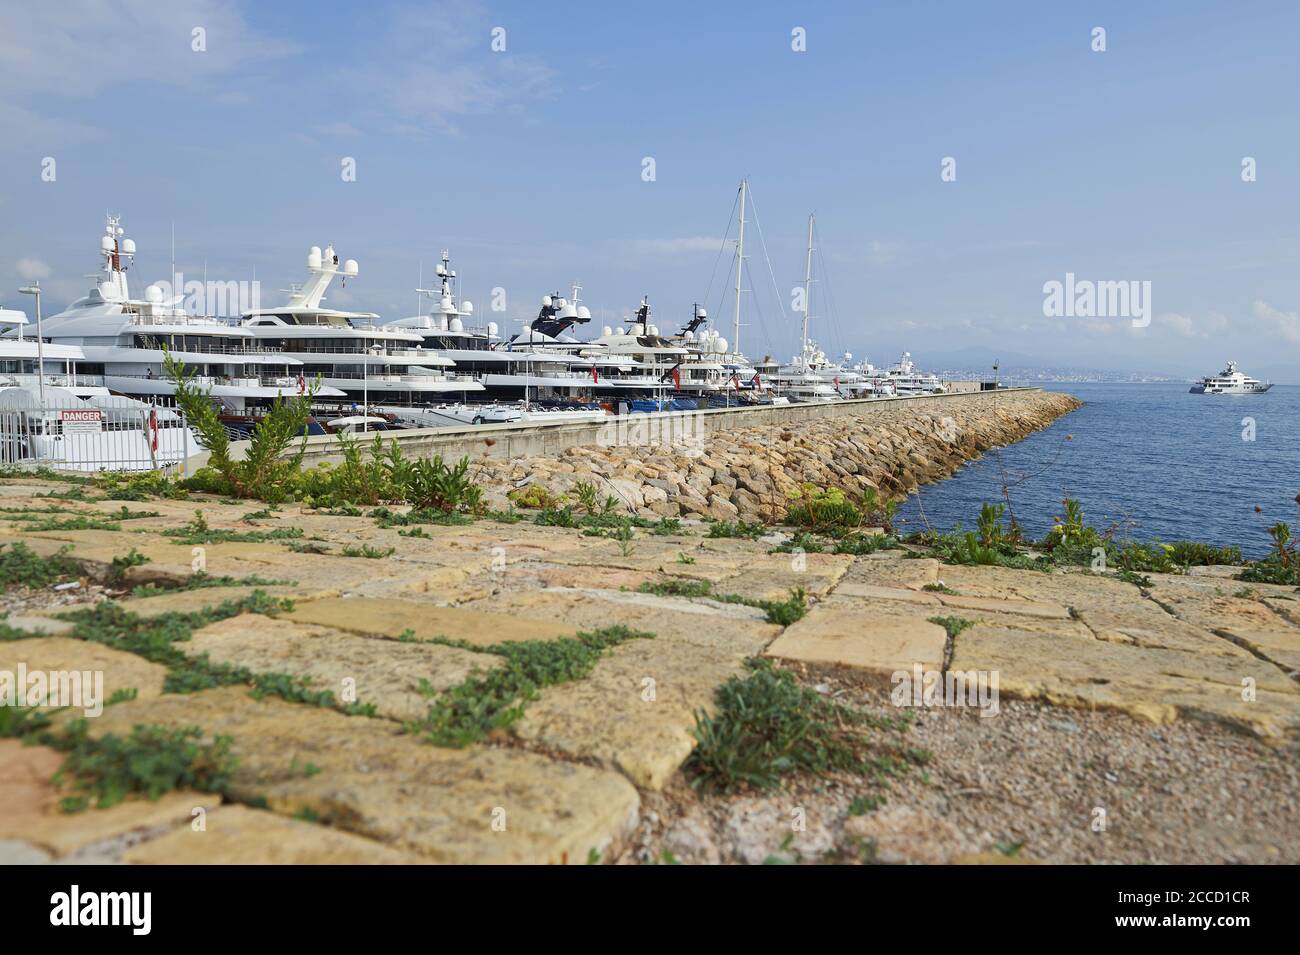 Antibes (sud-est de la France) : port de plaisance de Vauban. Quai des Milliartaires (quai des milliardaires) ou International Yacht Club d'Antibes (IY Banque D'Images